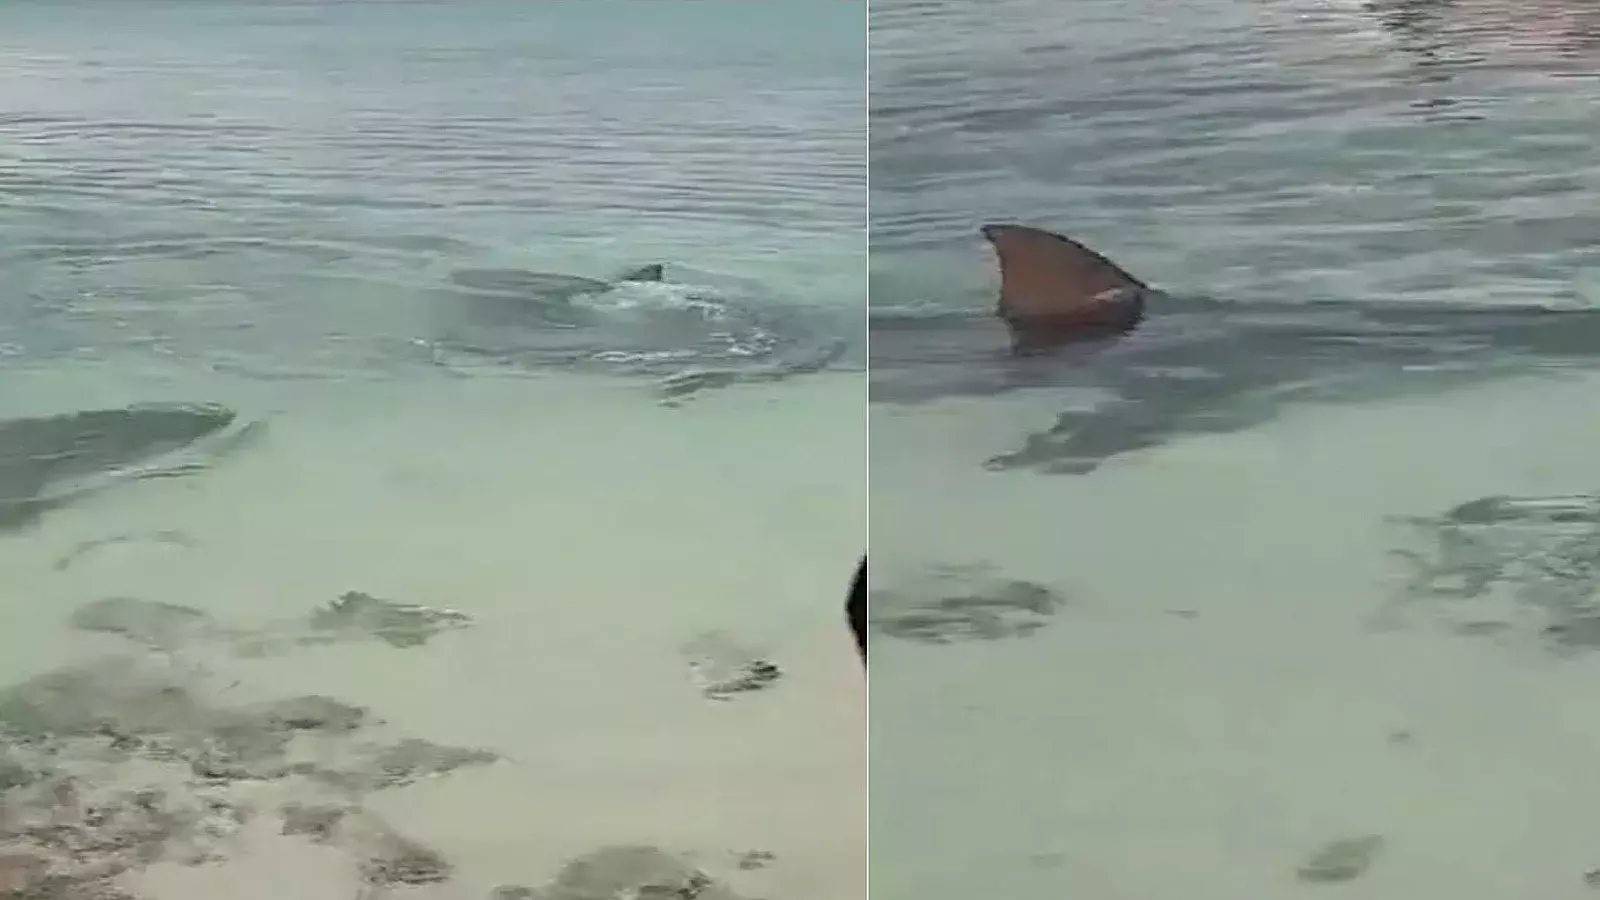 Espectacular encuentro de bañistas con grandes tiburones en playa cubana